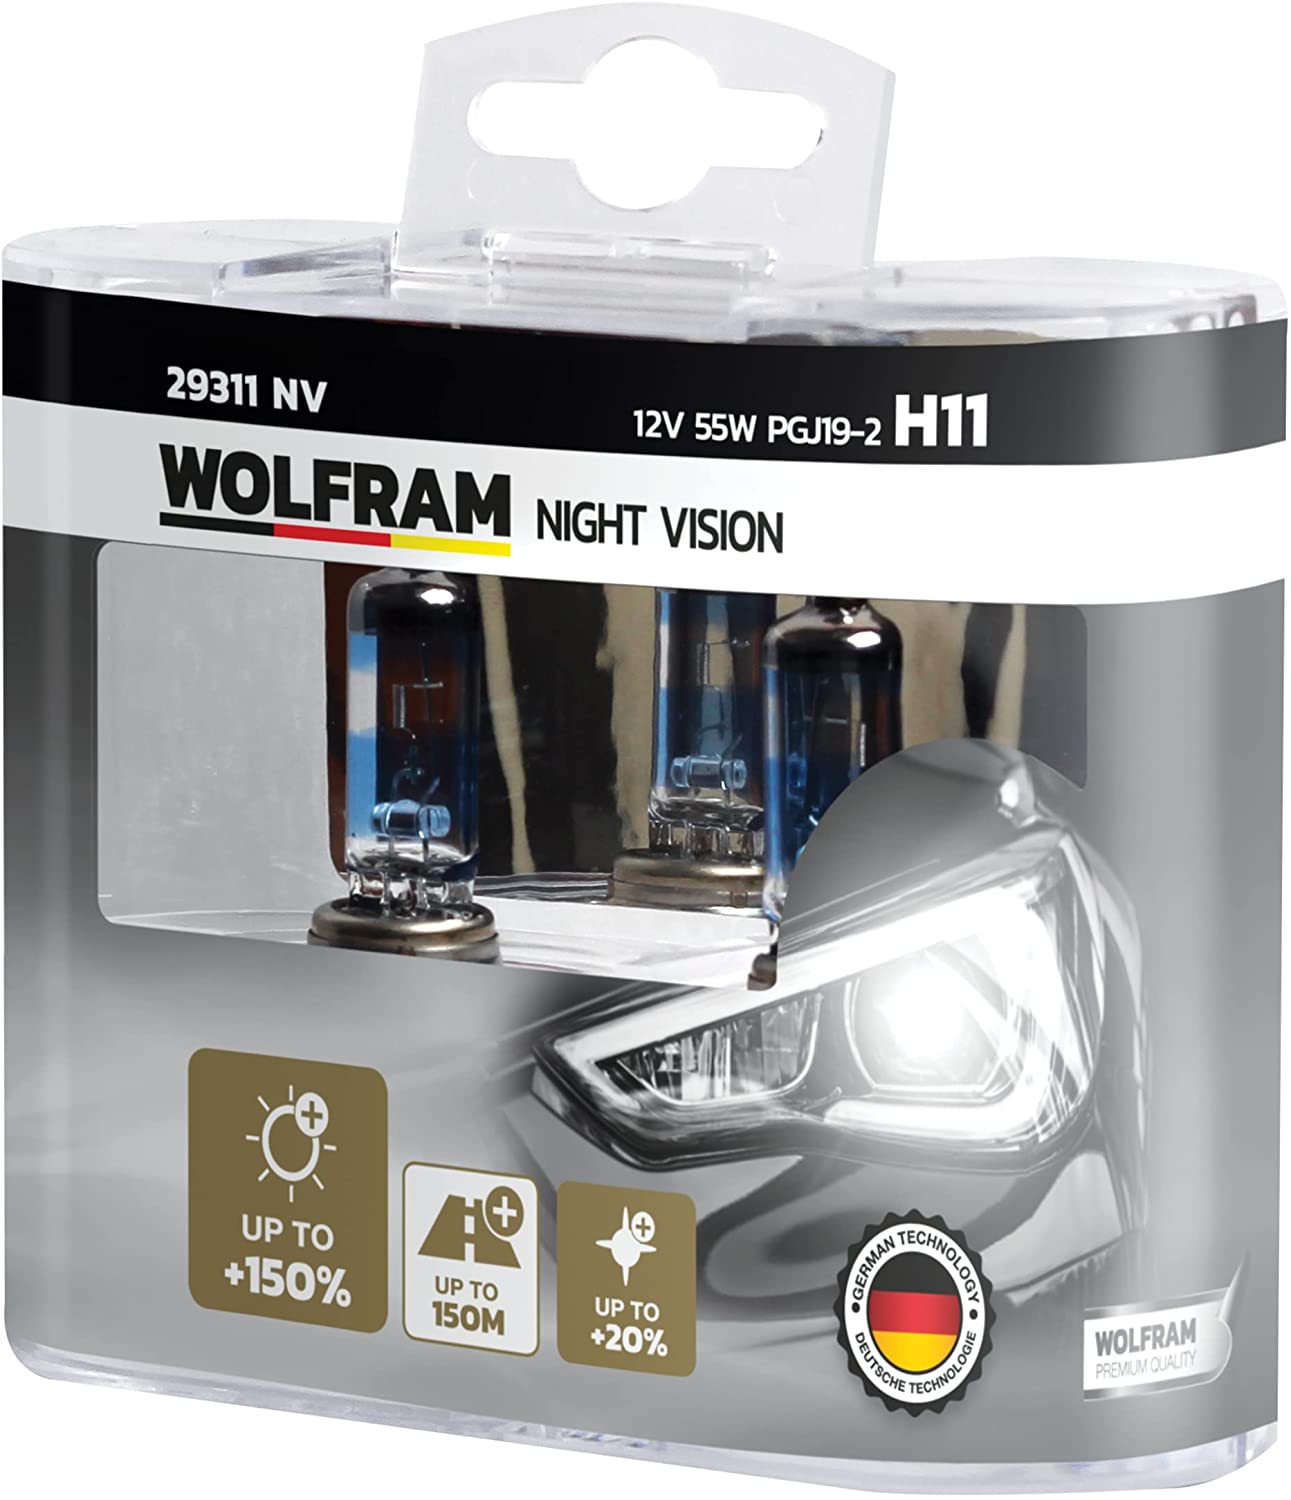 Лампа галогенная WOLFRAM NIGHT VISION +150% EXTRA LIGHT + 20% WHITER H11 PGJ19-2 12V 55W 2 шт.